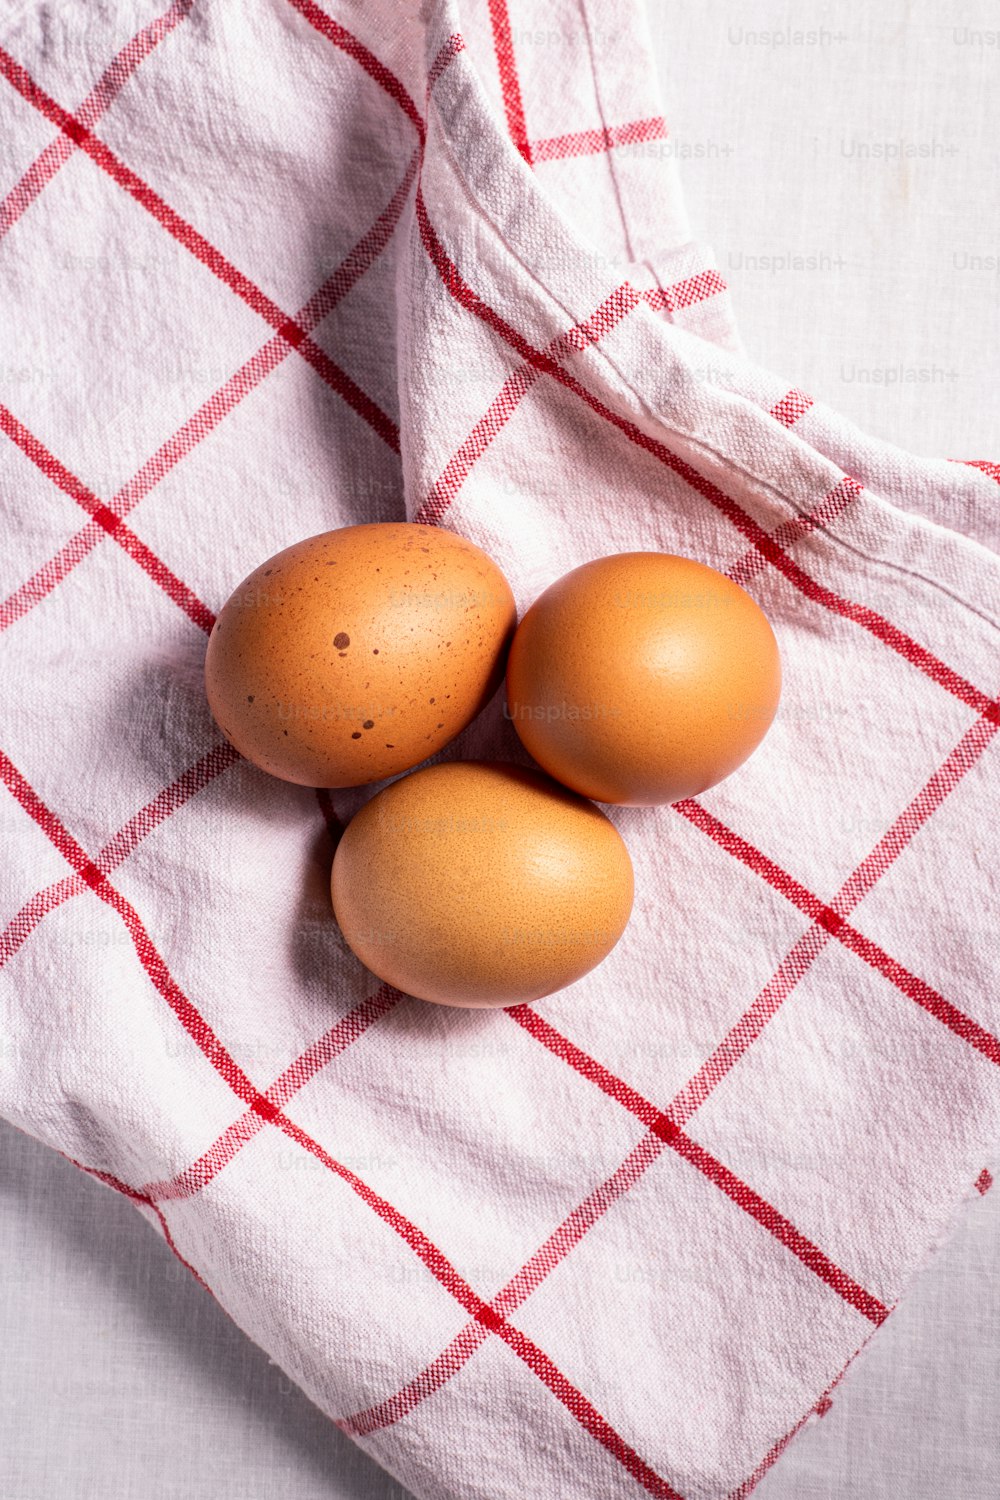 Tre uova marroni su un asciugamano a scacchi rossi e bianchi